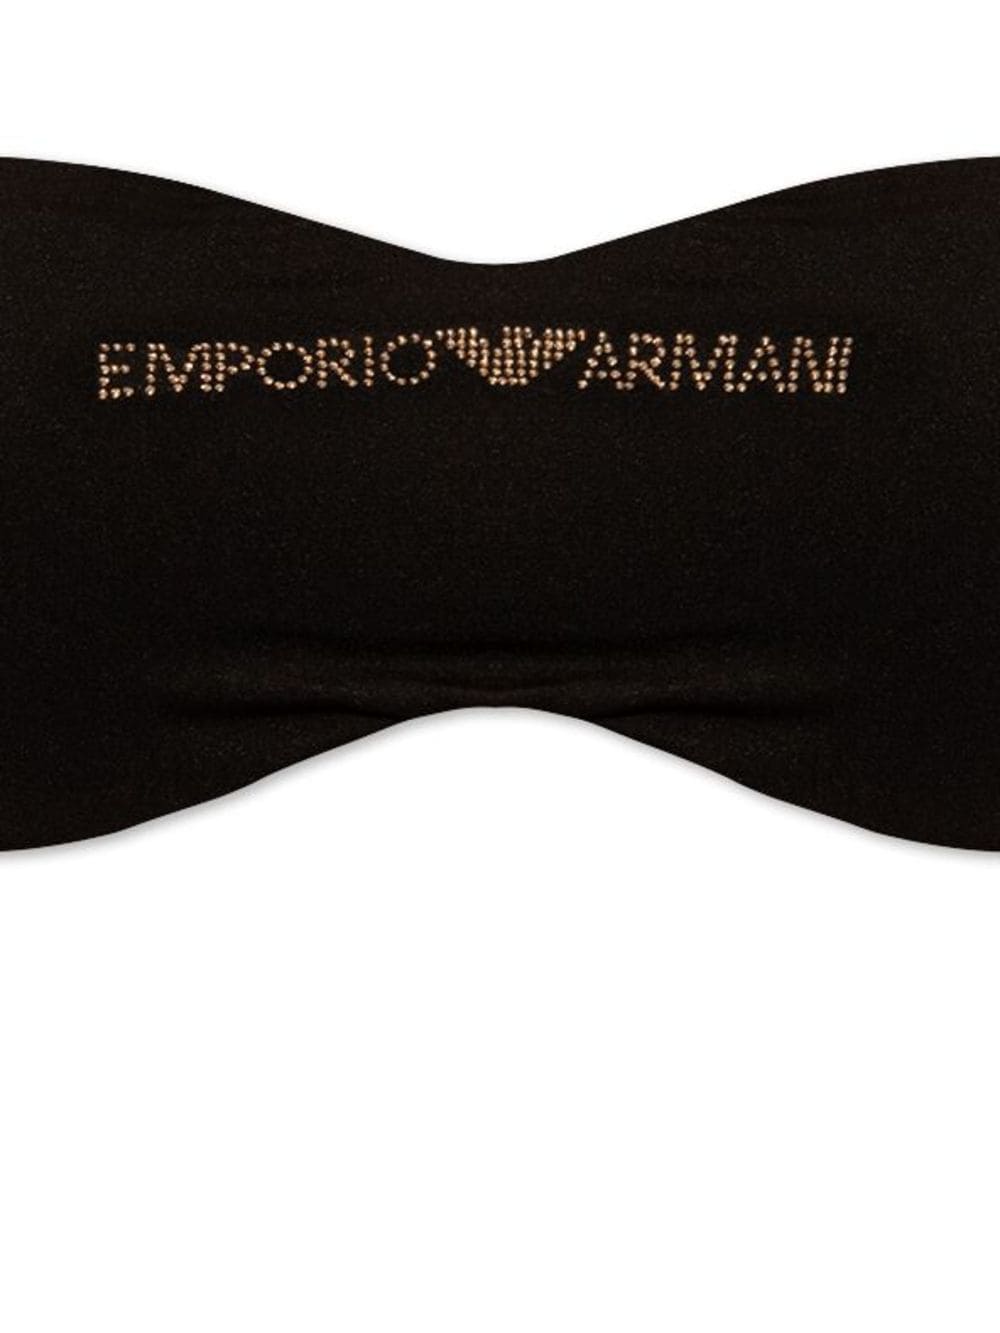 Emporio Armani Sea Clothing Black